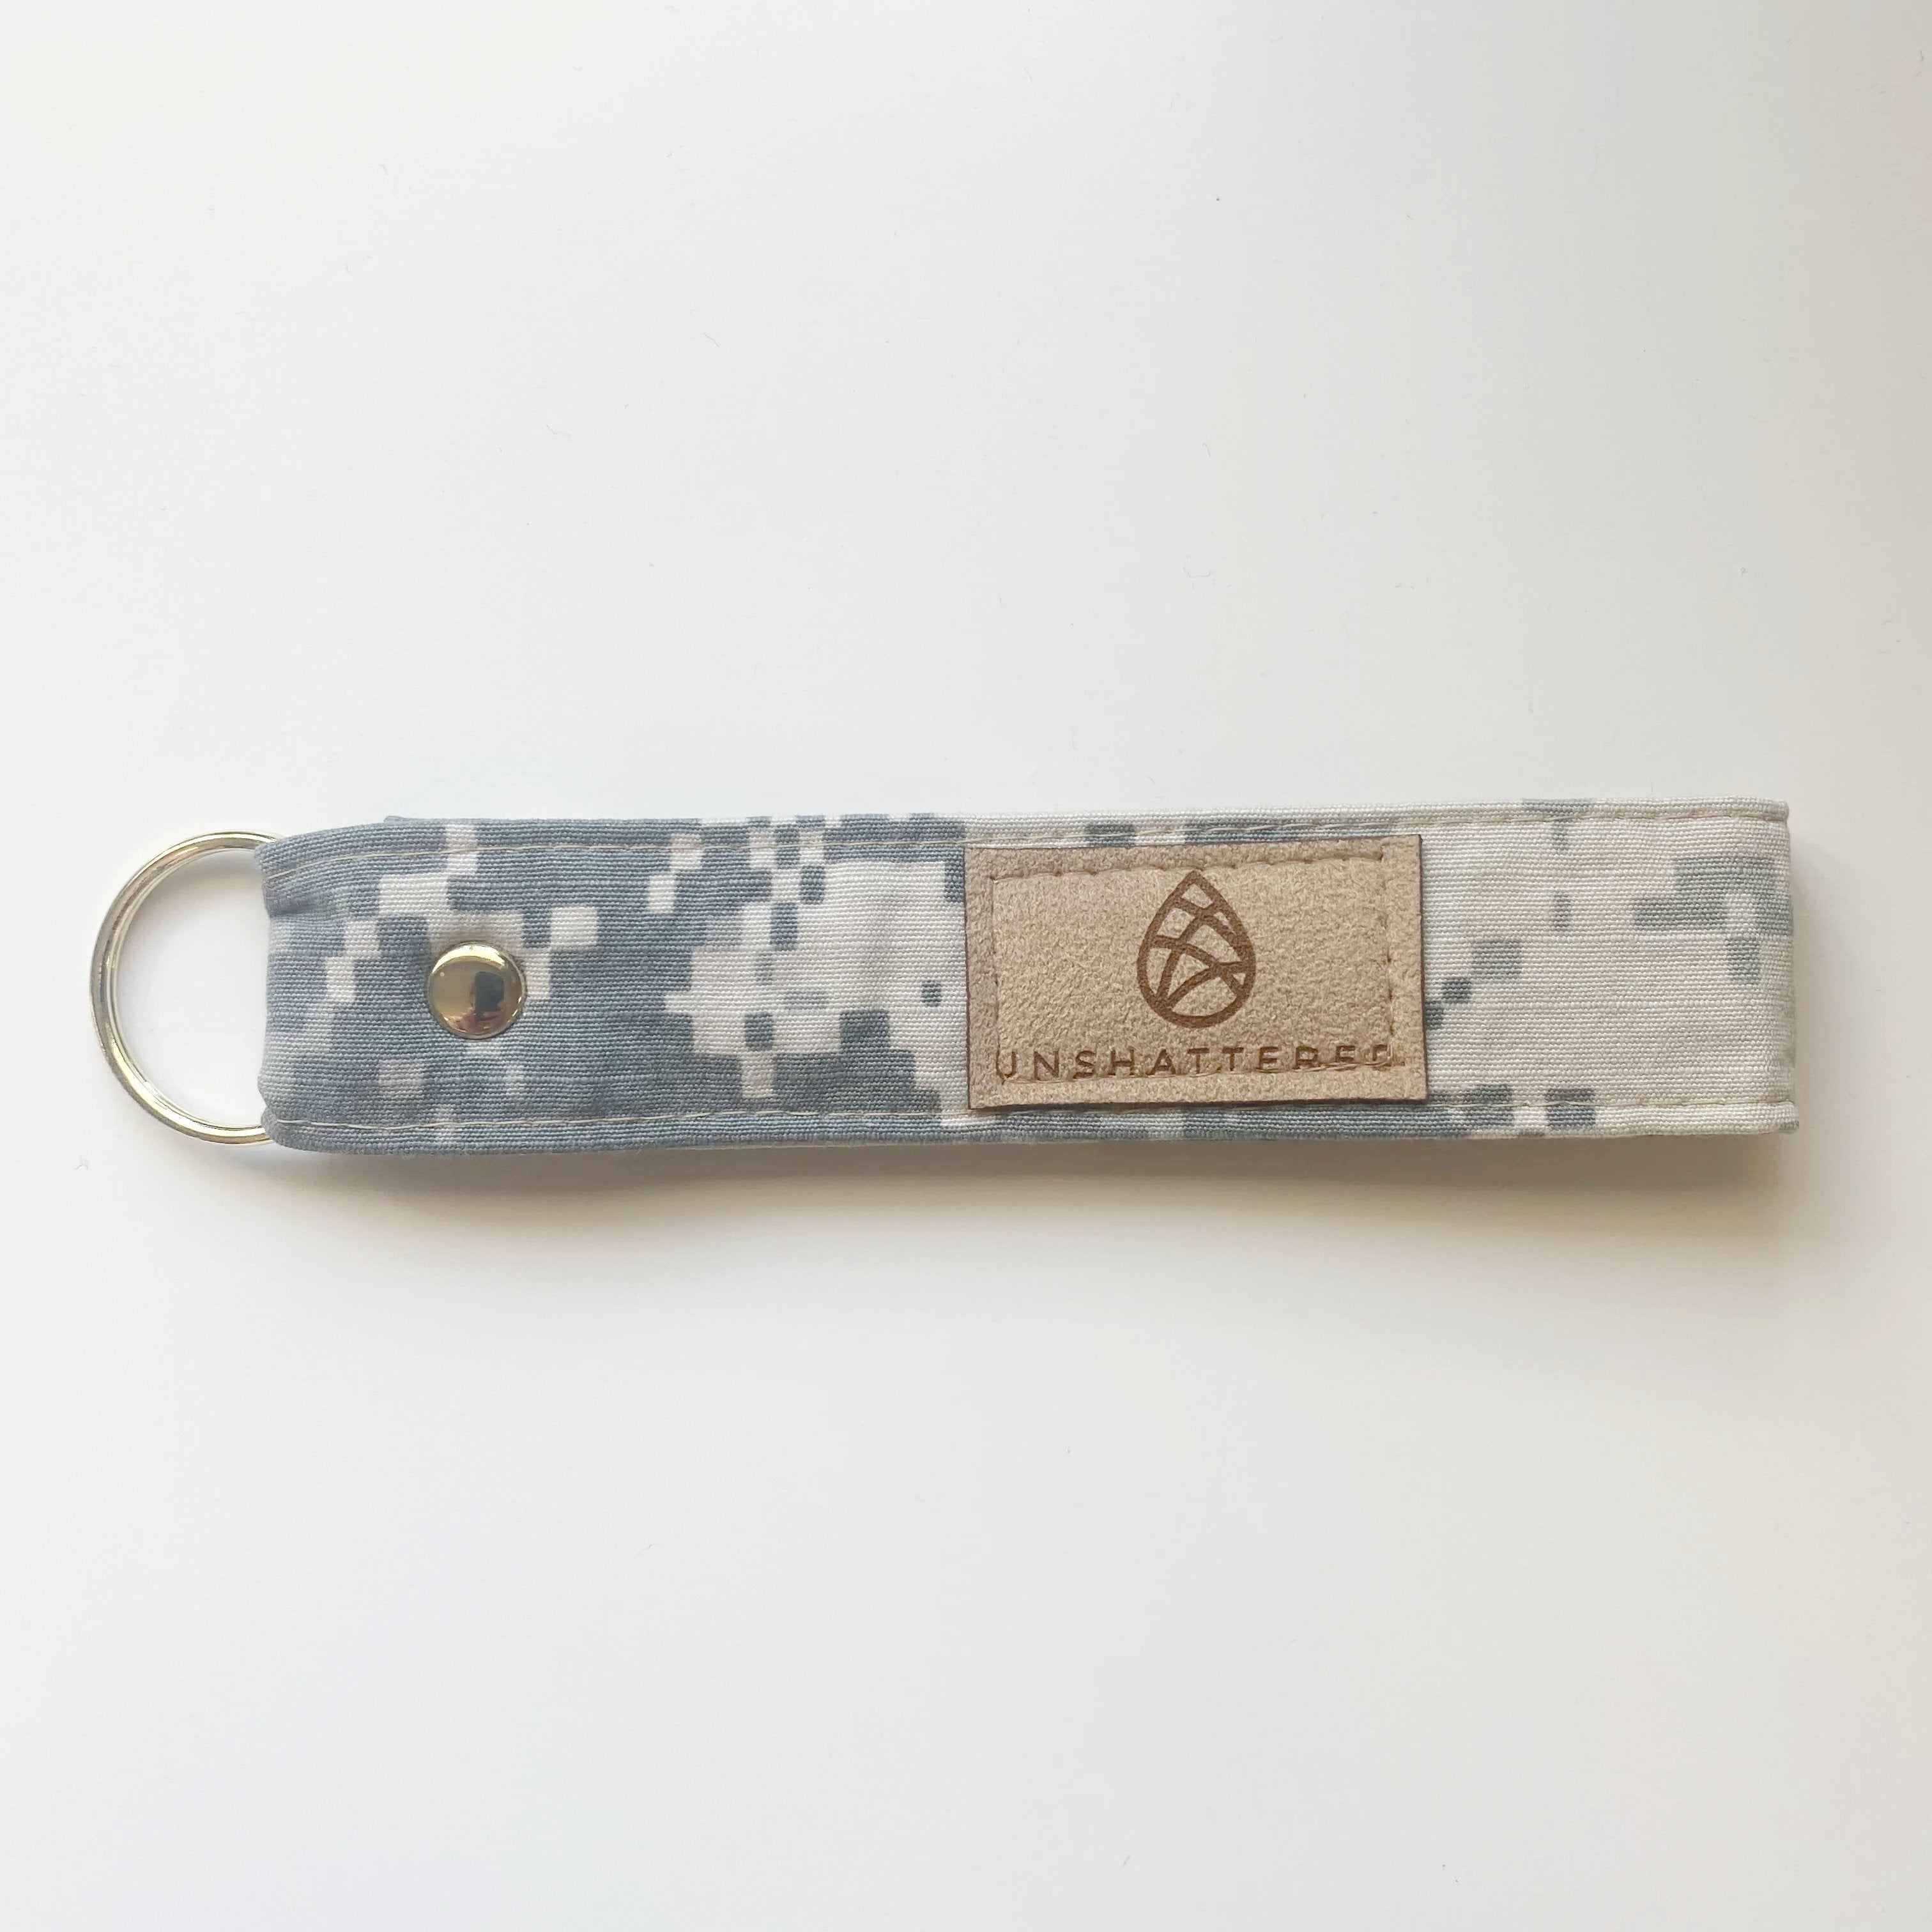 US Army Keychain